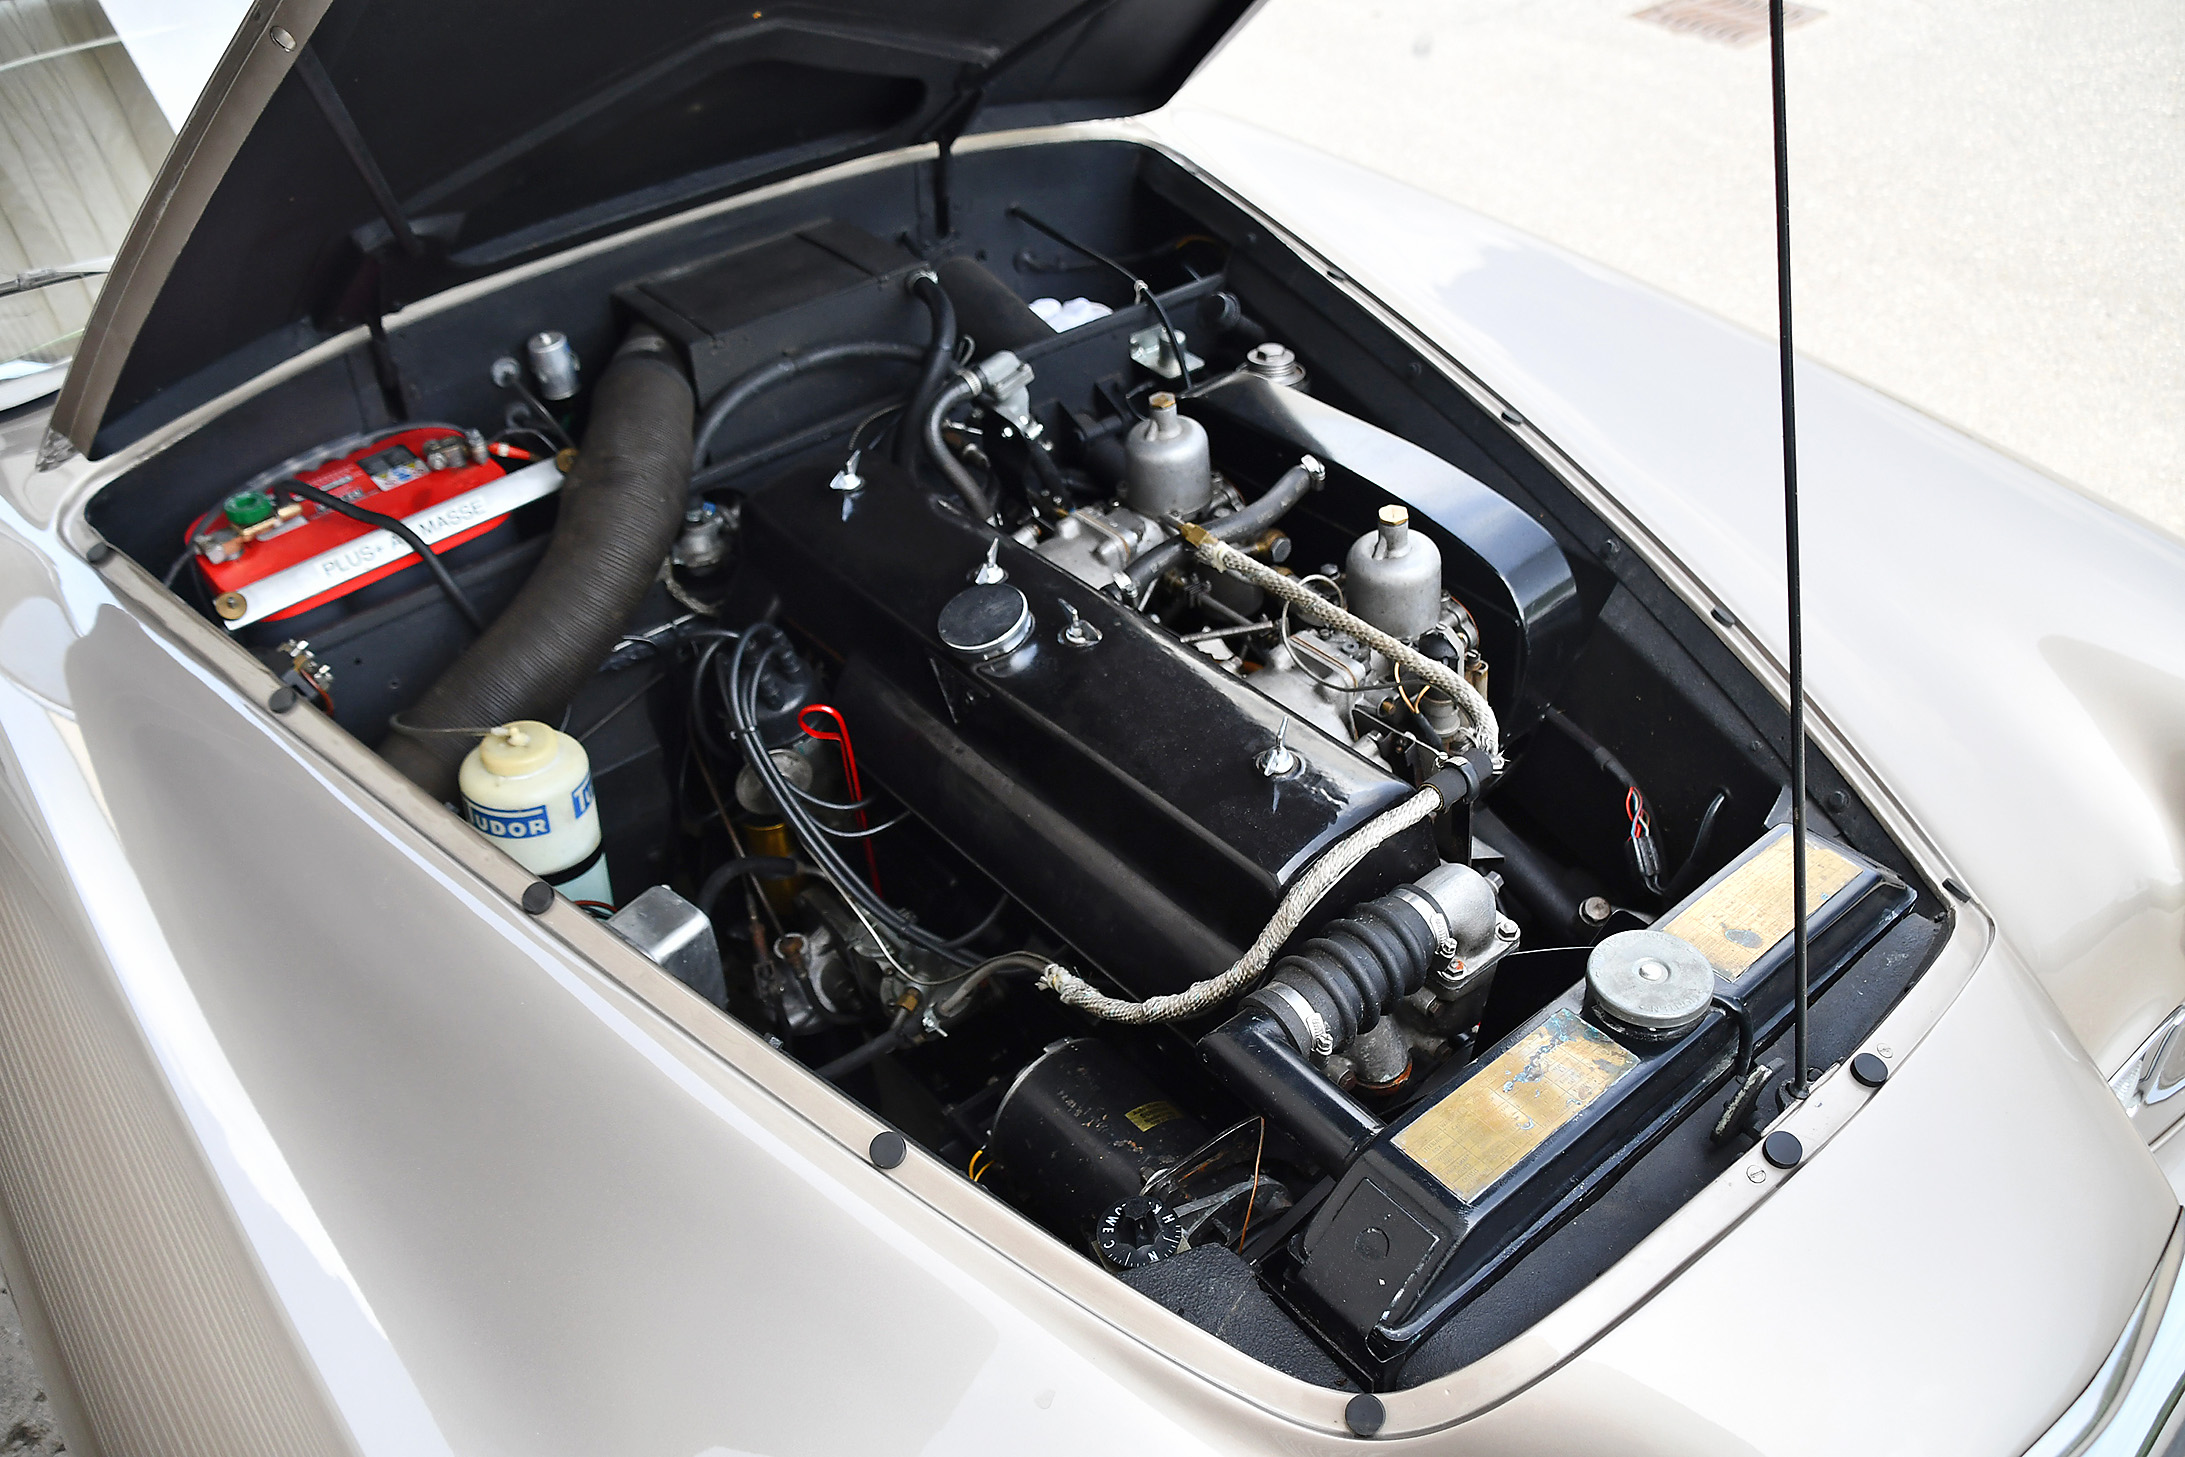 1959 Alvis TD 21 Graber – le moteur de 2993 cm³ a reçu une réfection en 2016 et possède des culasses au sans plomb.